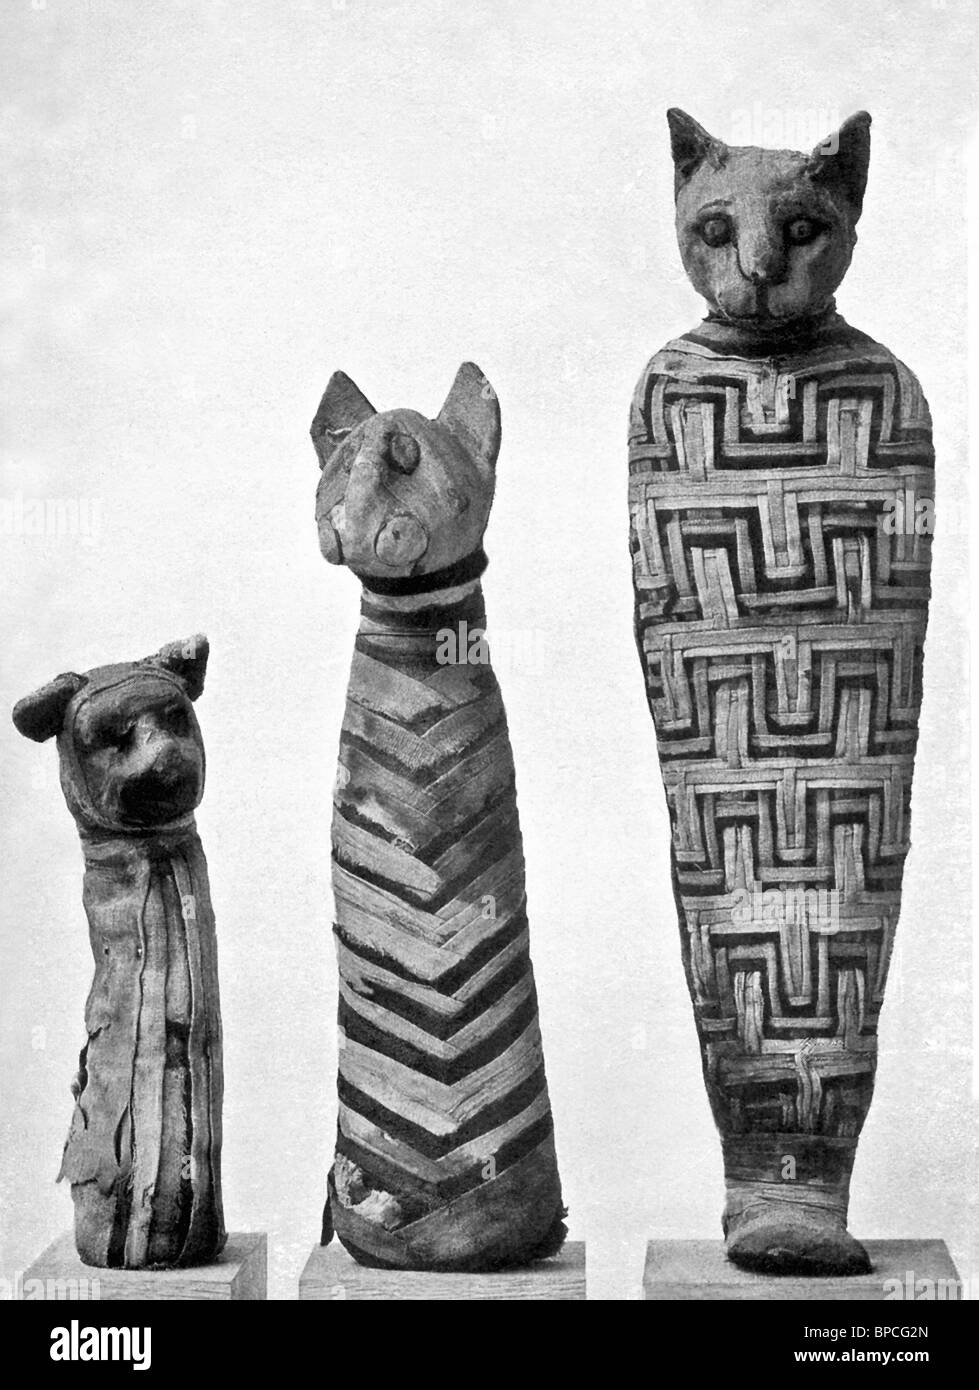 Diese drei mumifizierten Antike ägyptische Katzen sind im britischen Museum in London untergebracht. Stockfoto